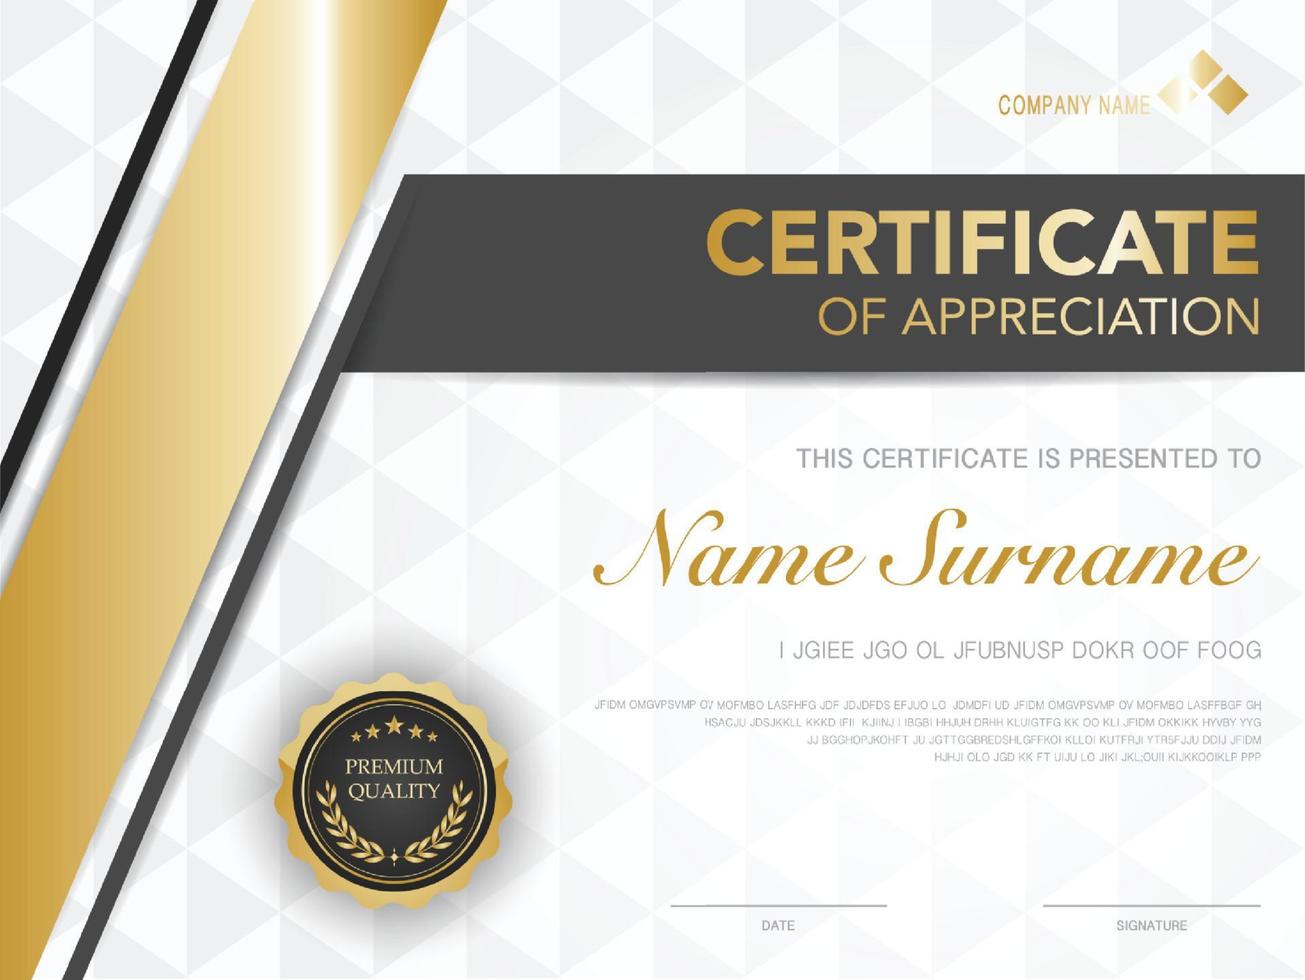 modello di certificato nero e oro con immagine di stile di lusso. diploma di disegno geometrico moderno. vettore eps10